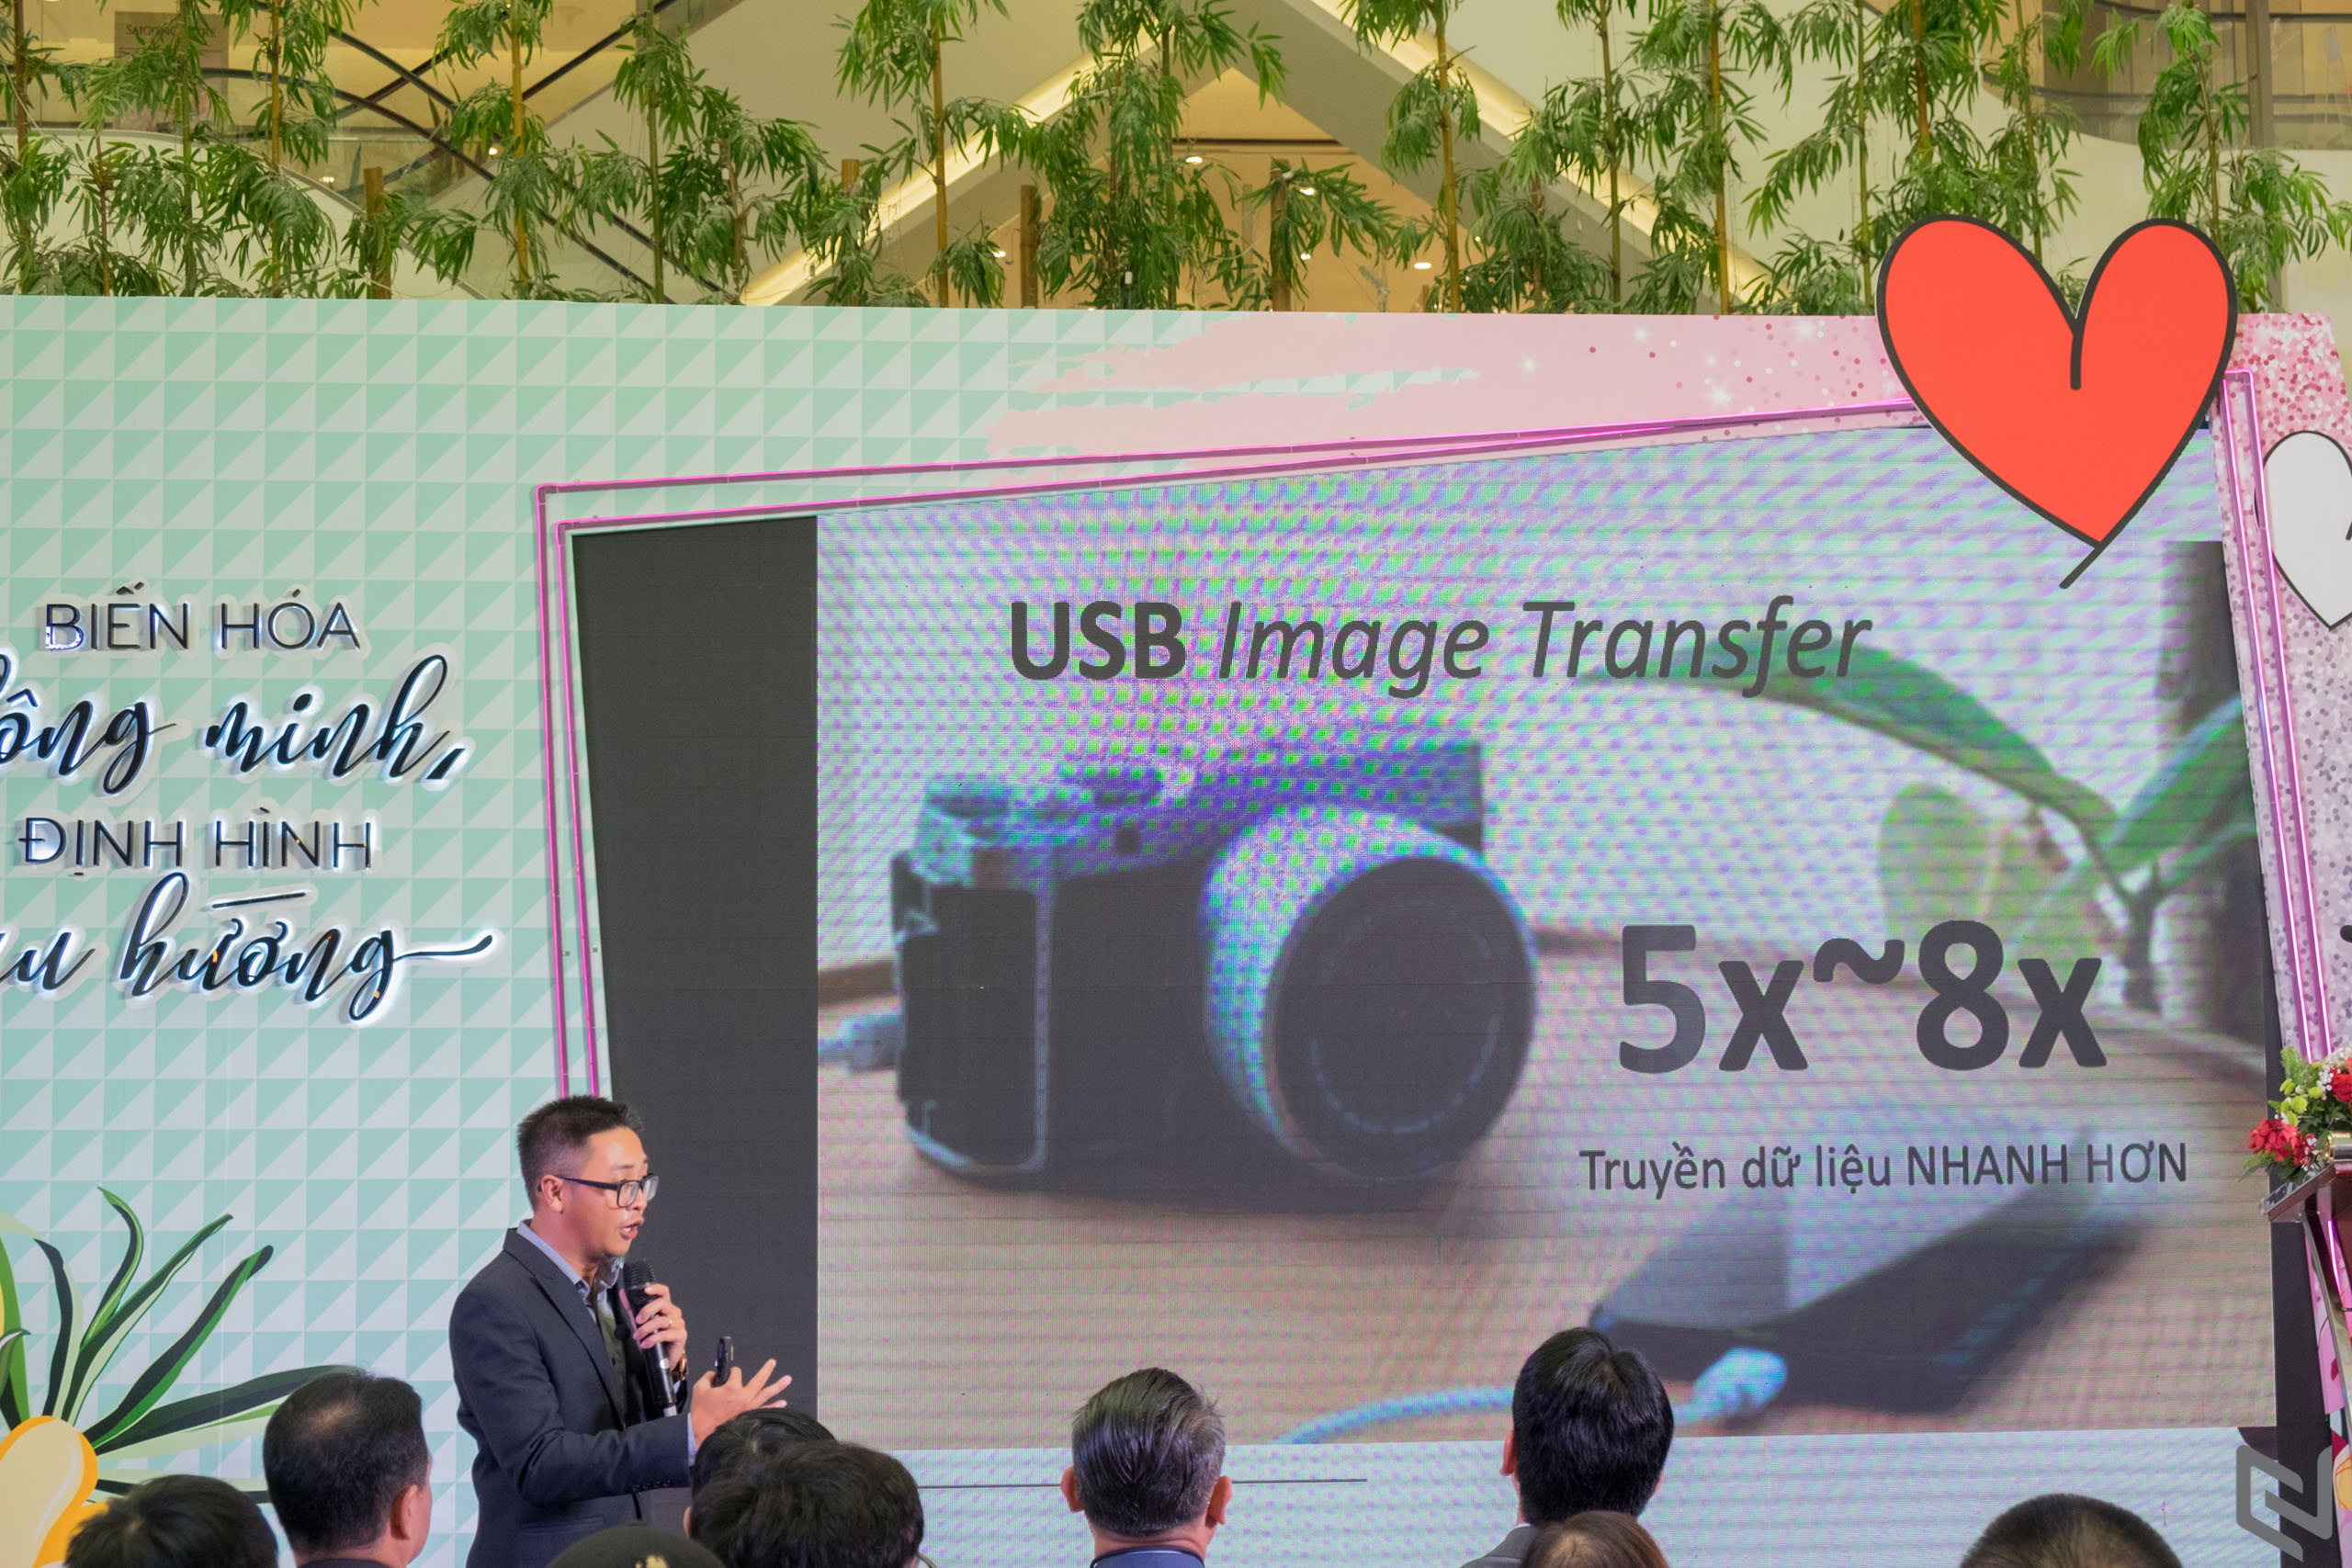 Máy ảnh Fujifilm X-A7 ra mắt thị trường Việt Nam: quay phim 4k, lấy nét nhanh, nhỏ gọn phù hợp với vlogger và người dùng nhập môn, giá chỉ 15,990,000 đồng